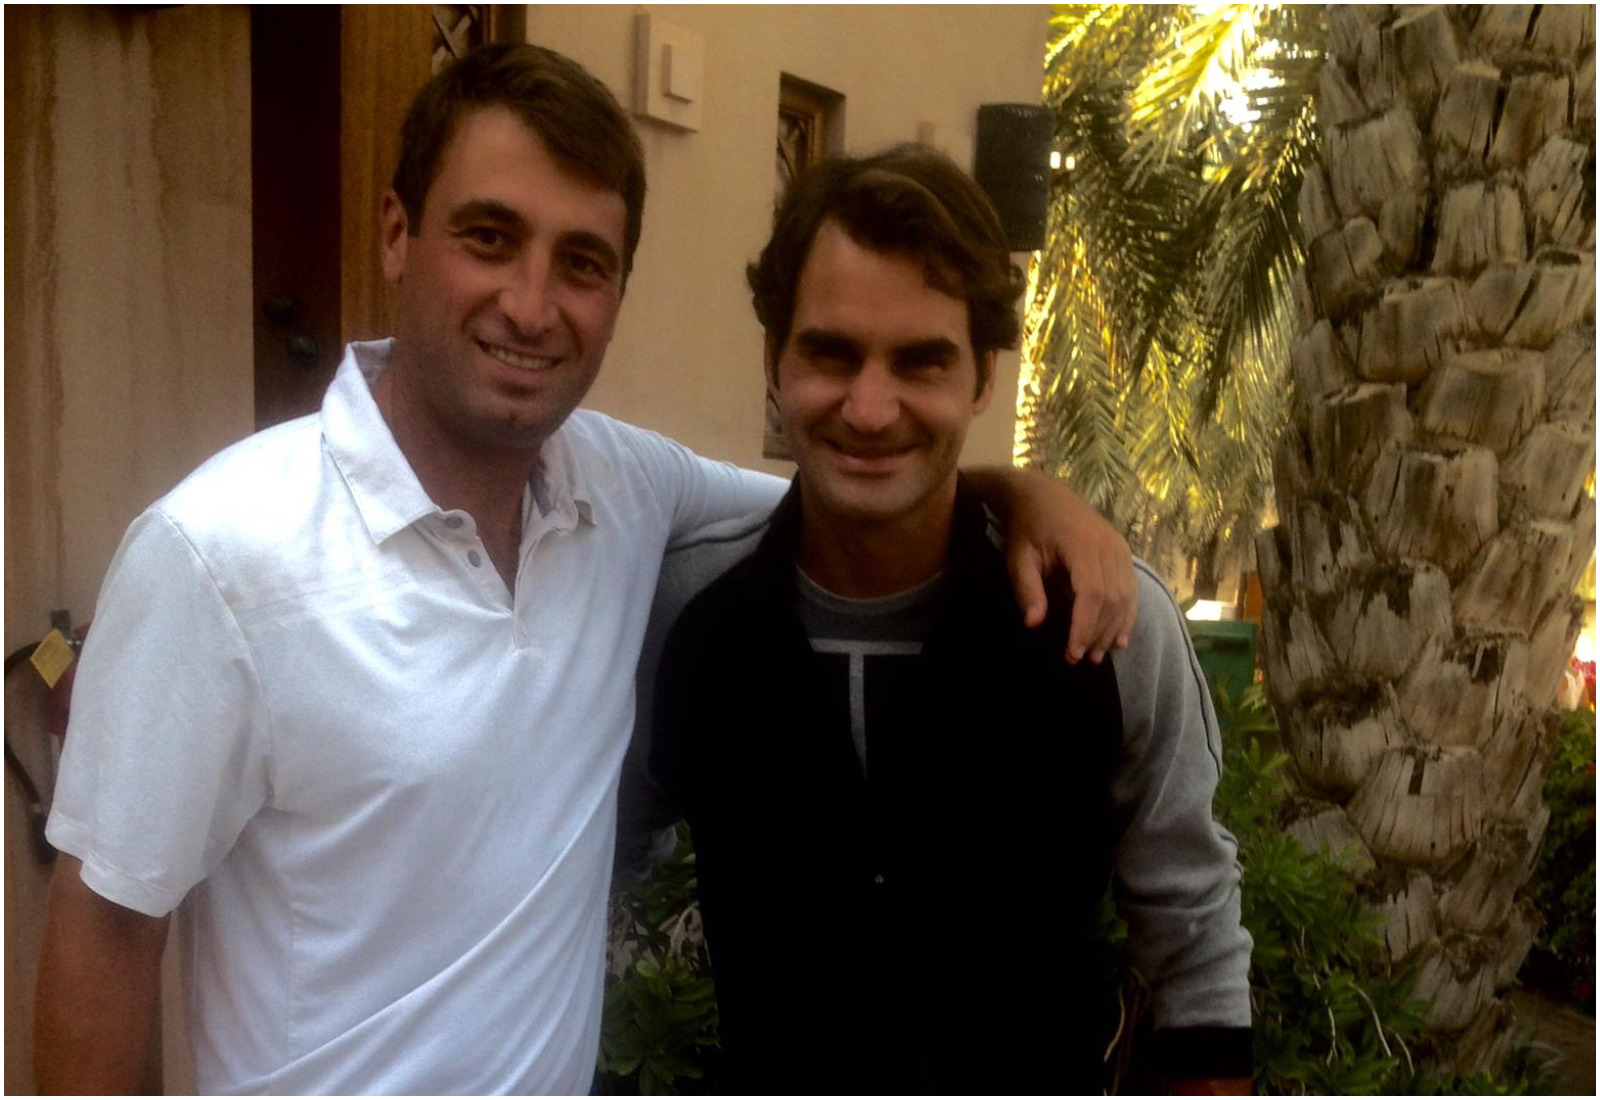 Marko Radovanović i Rodžer Federer